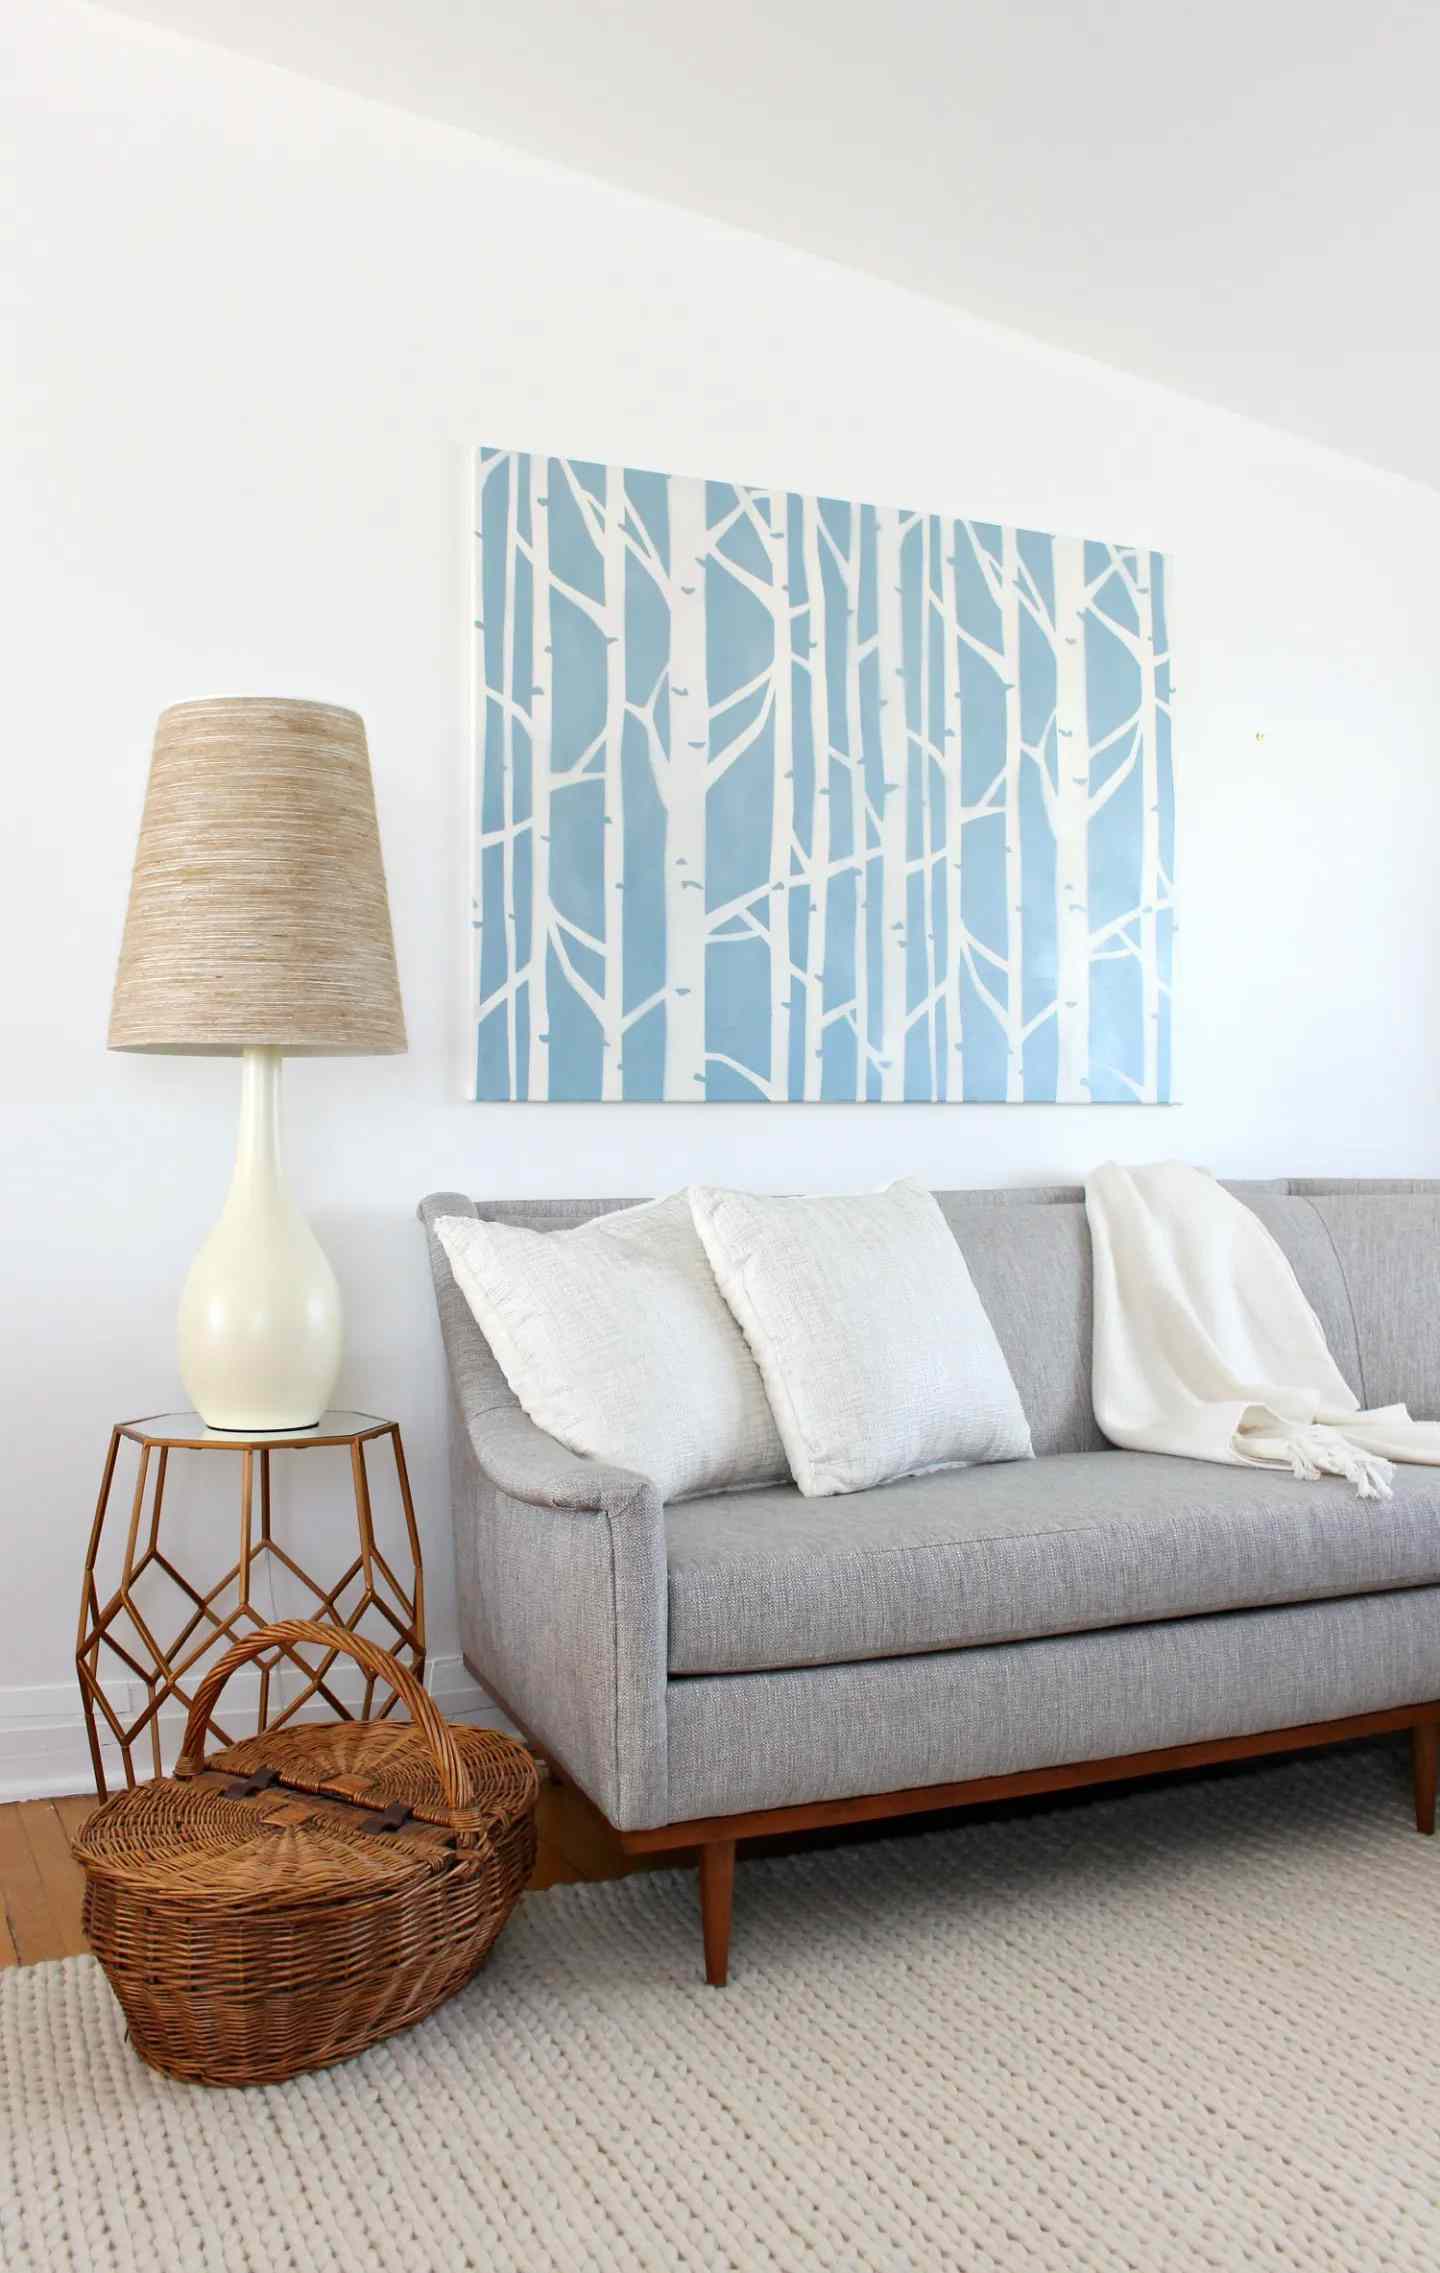 Eine große blau-weiße Baumkunst in einem Wohnzimmer